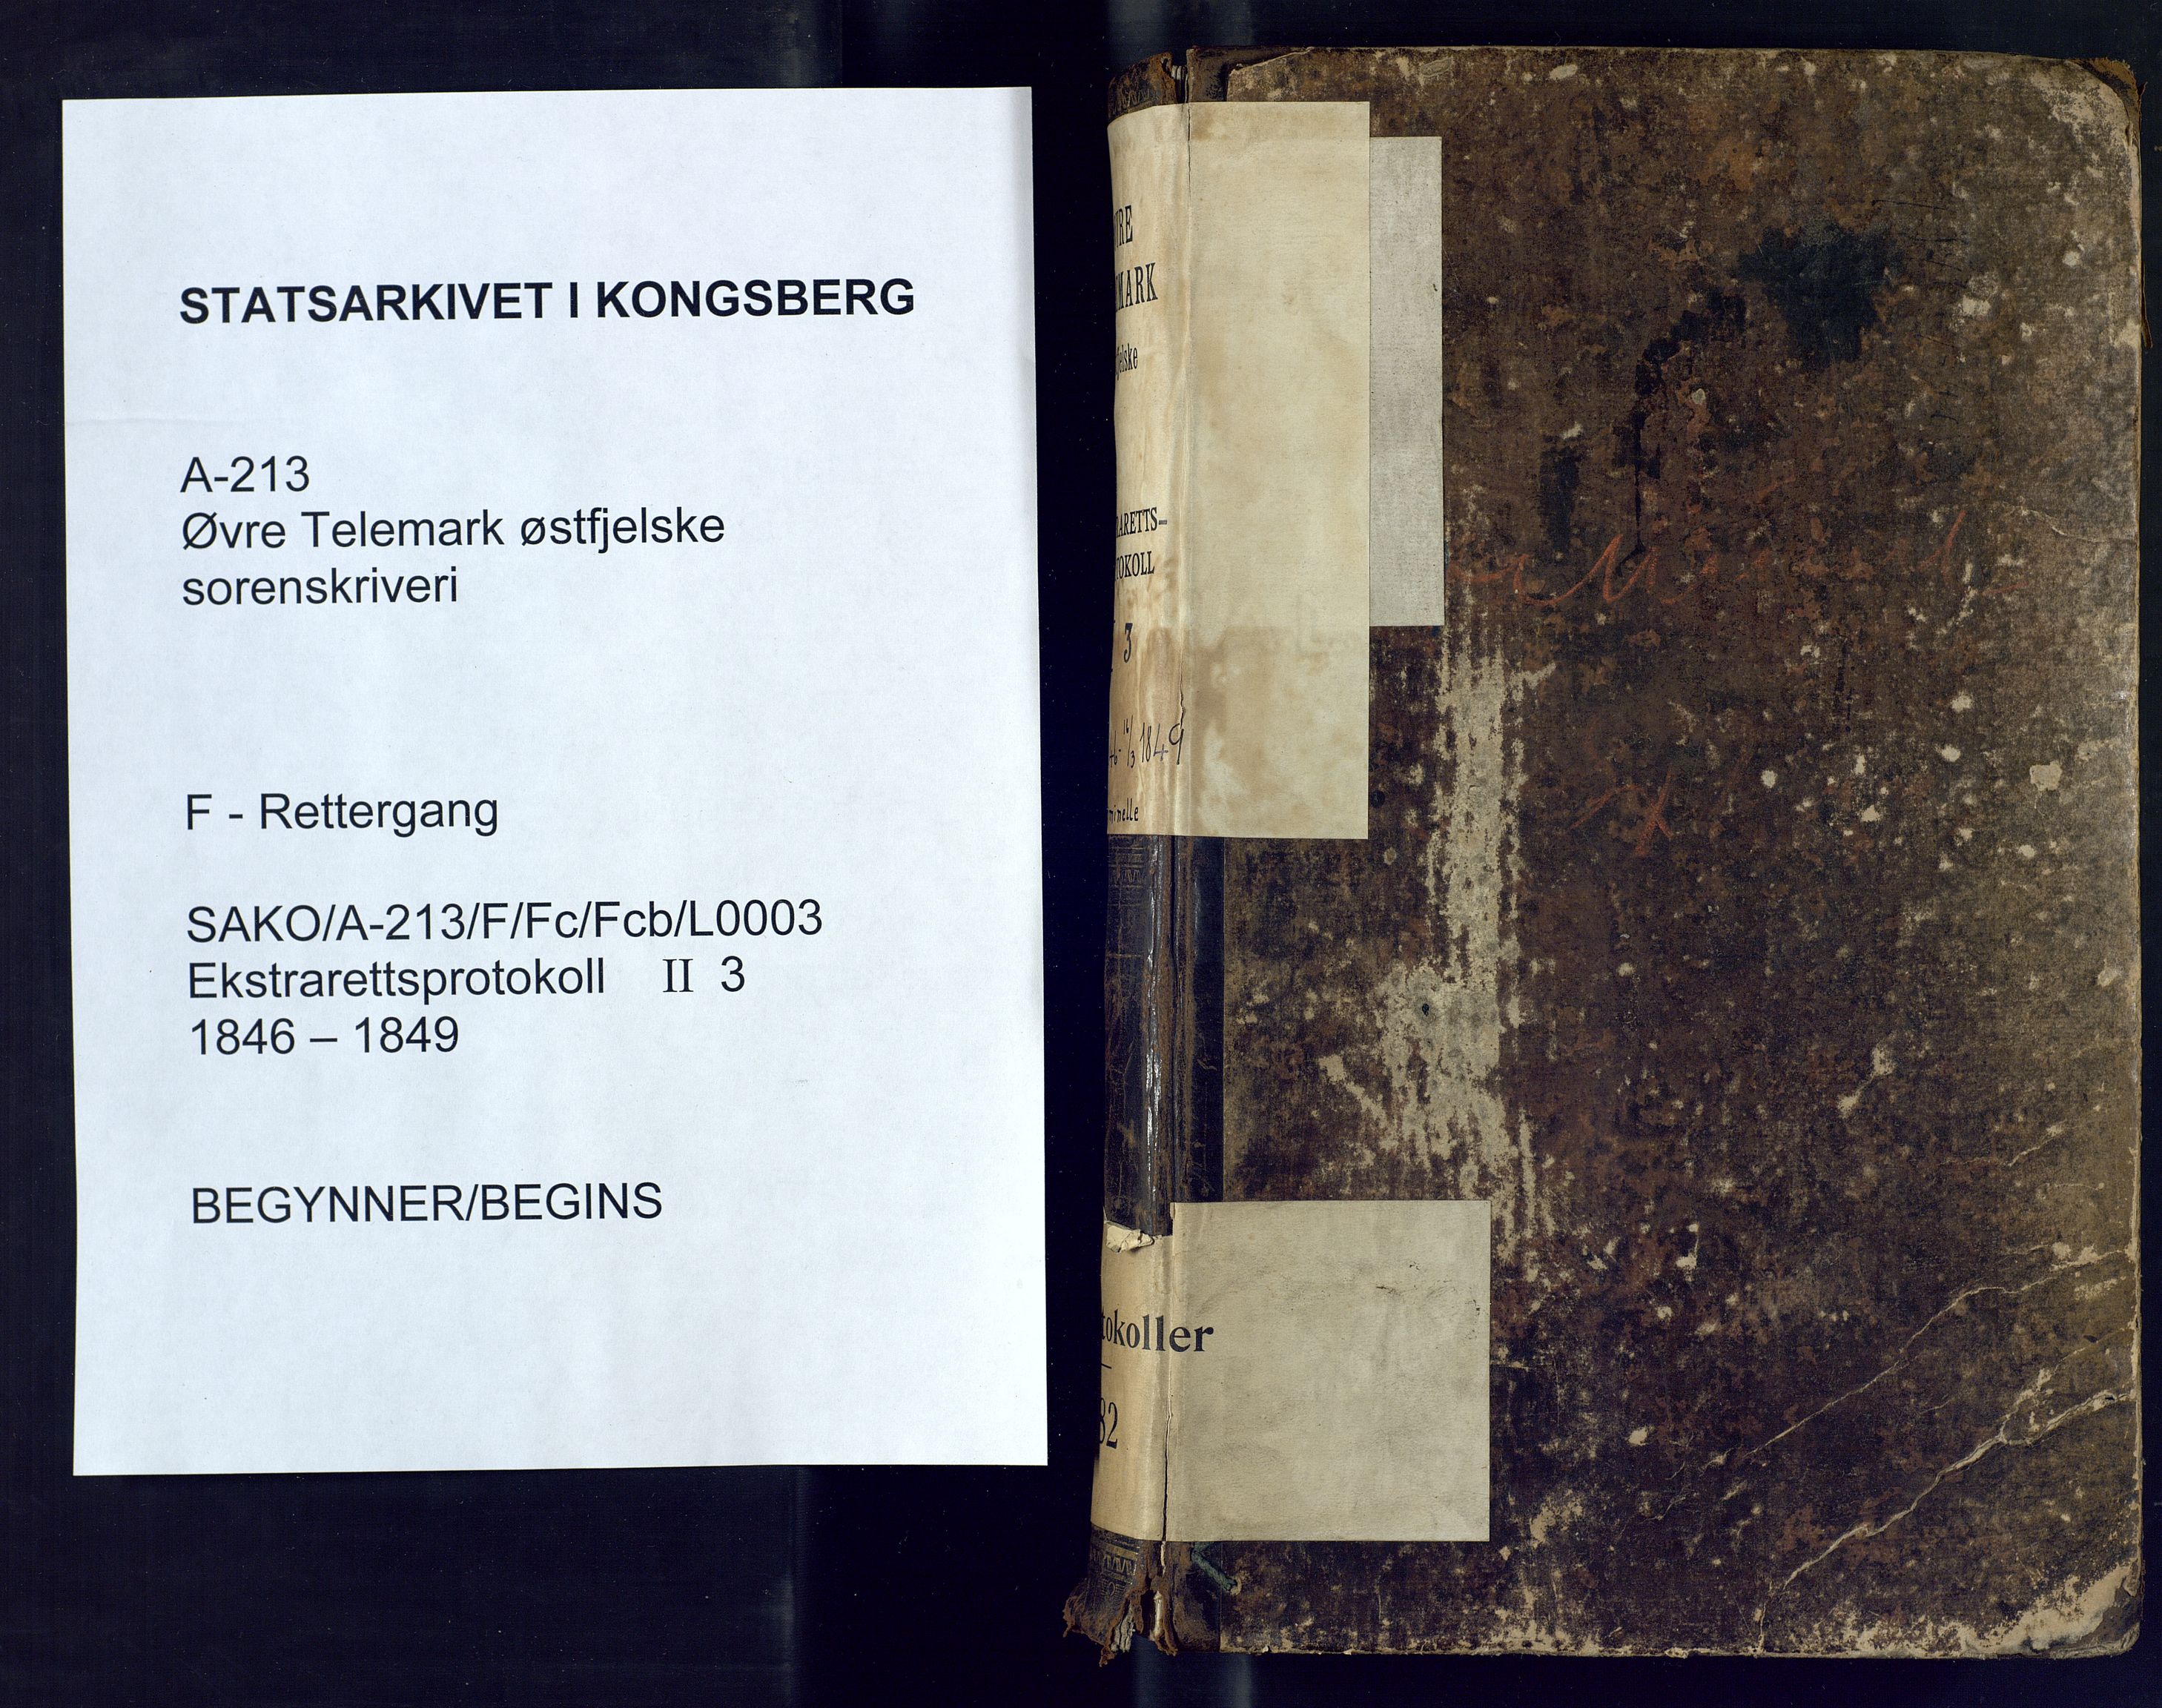 Øvre Telemark østfjelske sorenskriveri, SAKO/A-213/F/Fc/Fcb/L0003: Ekstrarettsprotokoll, straffesaker, 1846-1849